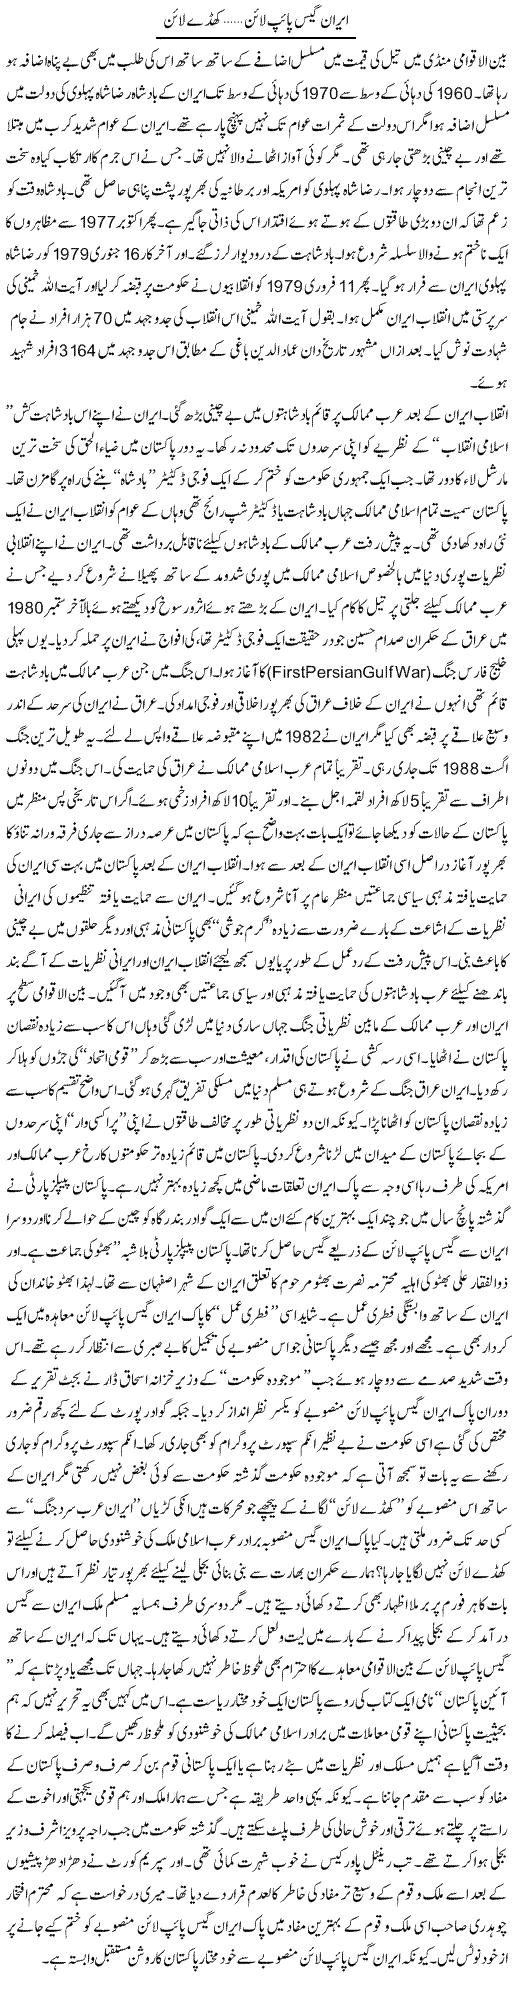 Iran Gais Pipe Line...Khade Line | Syed Zeeshan Haider | Daily Urdu Columns